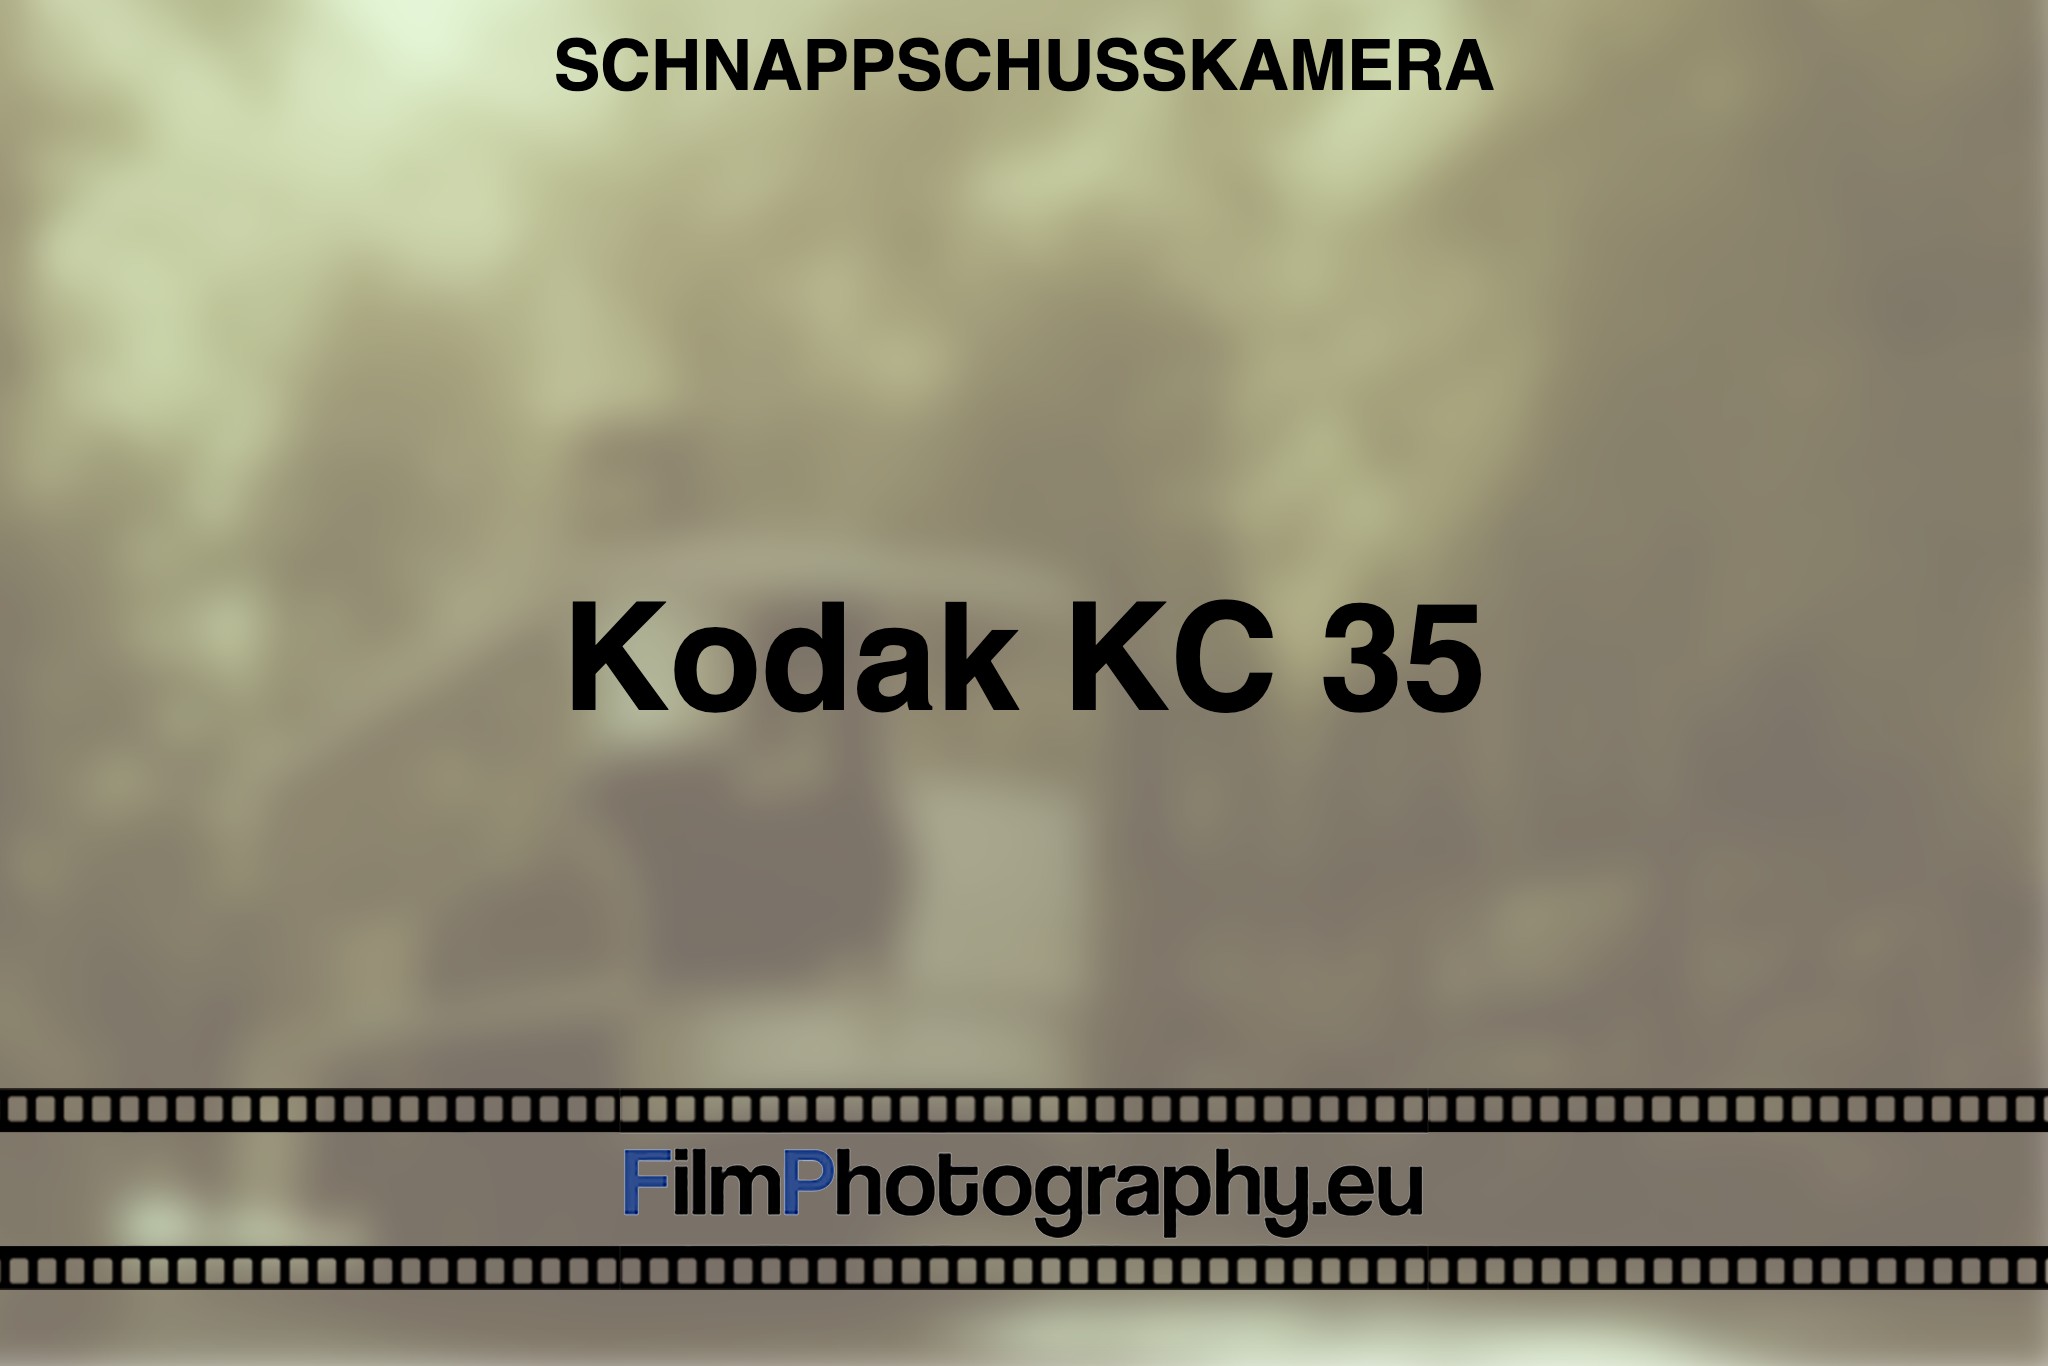 kodak-kc-35-schnappschusskamera-bnv